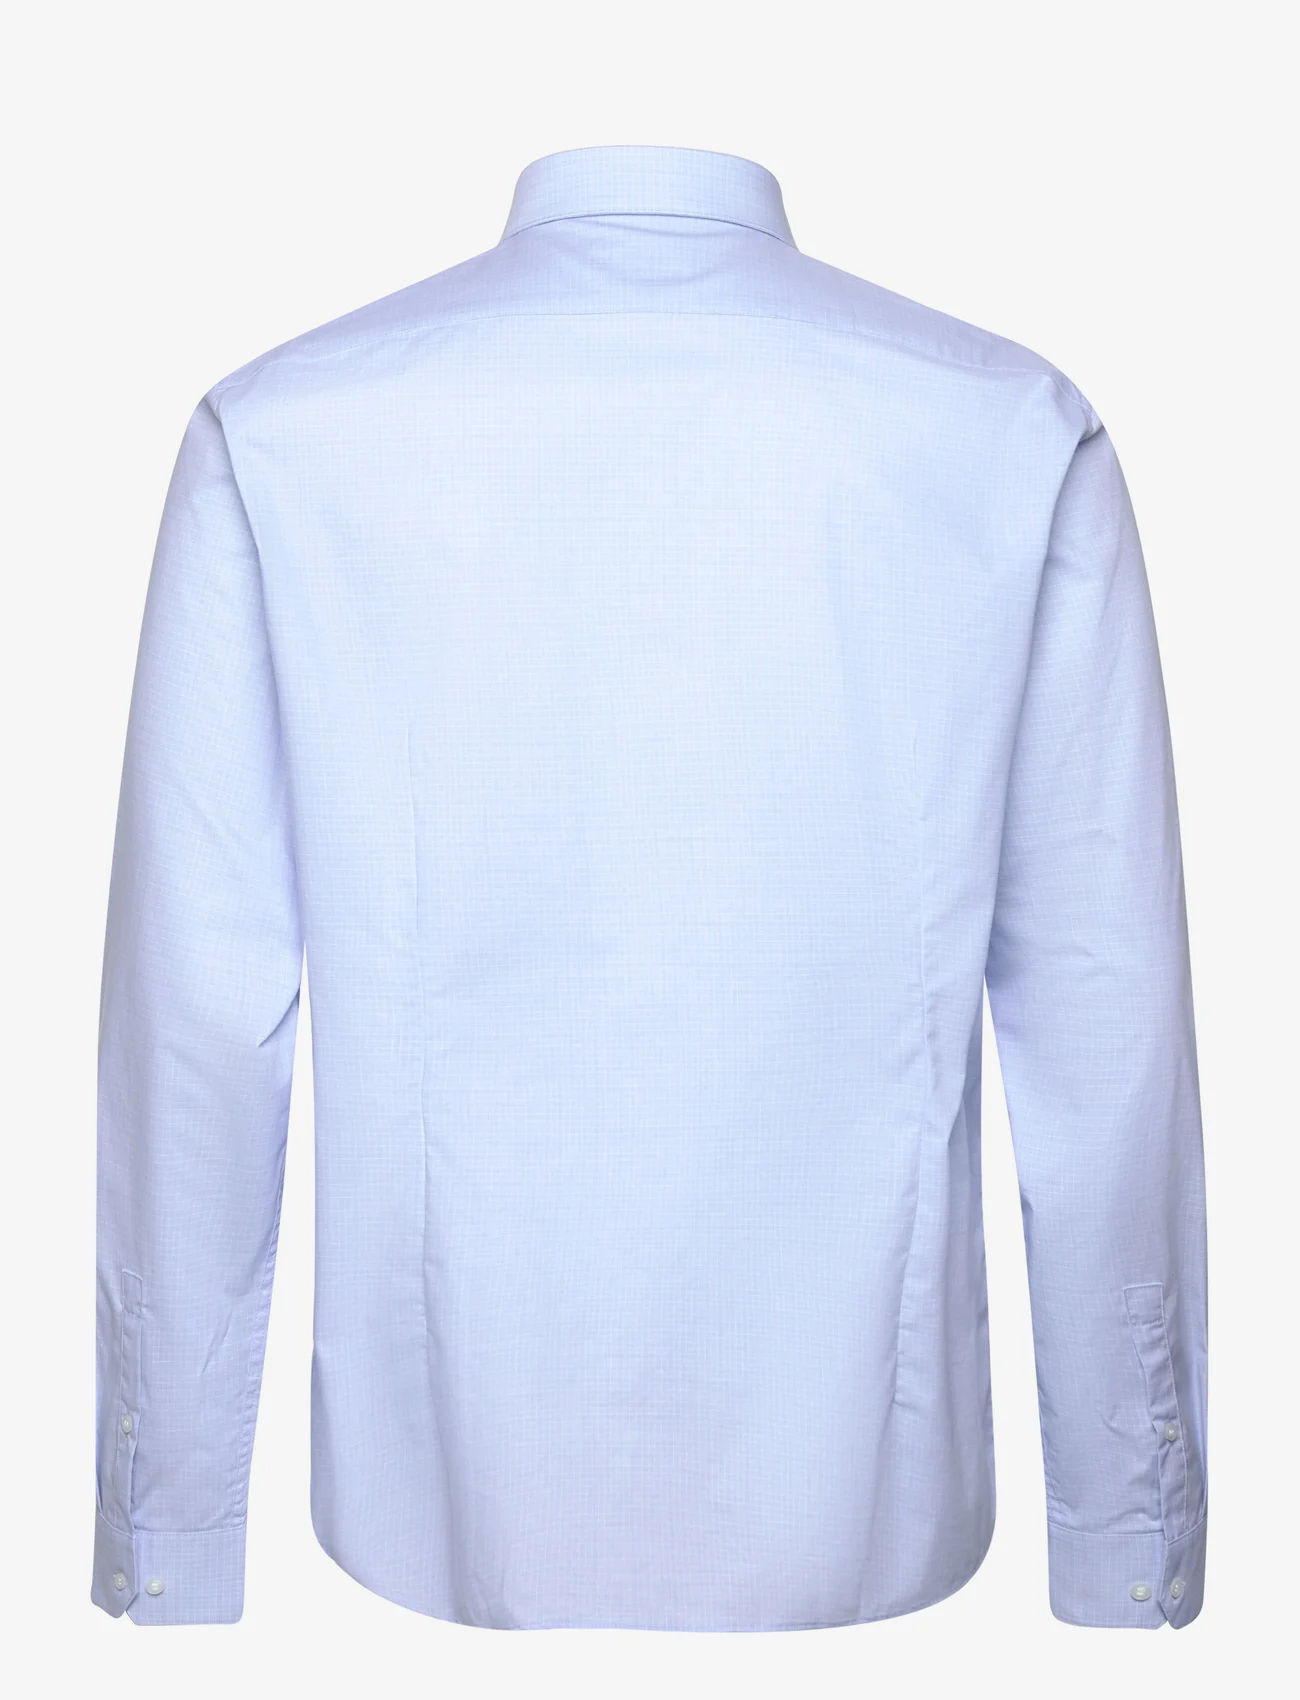 Calvin Klein - CHECK EASY CARE FITTED SHIRT - basic skjorter - vista blue - 1